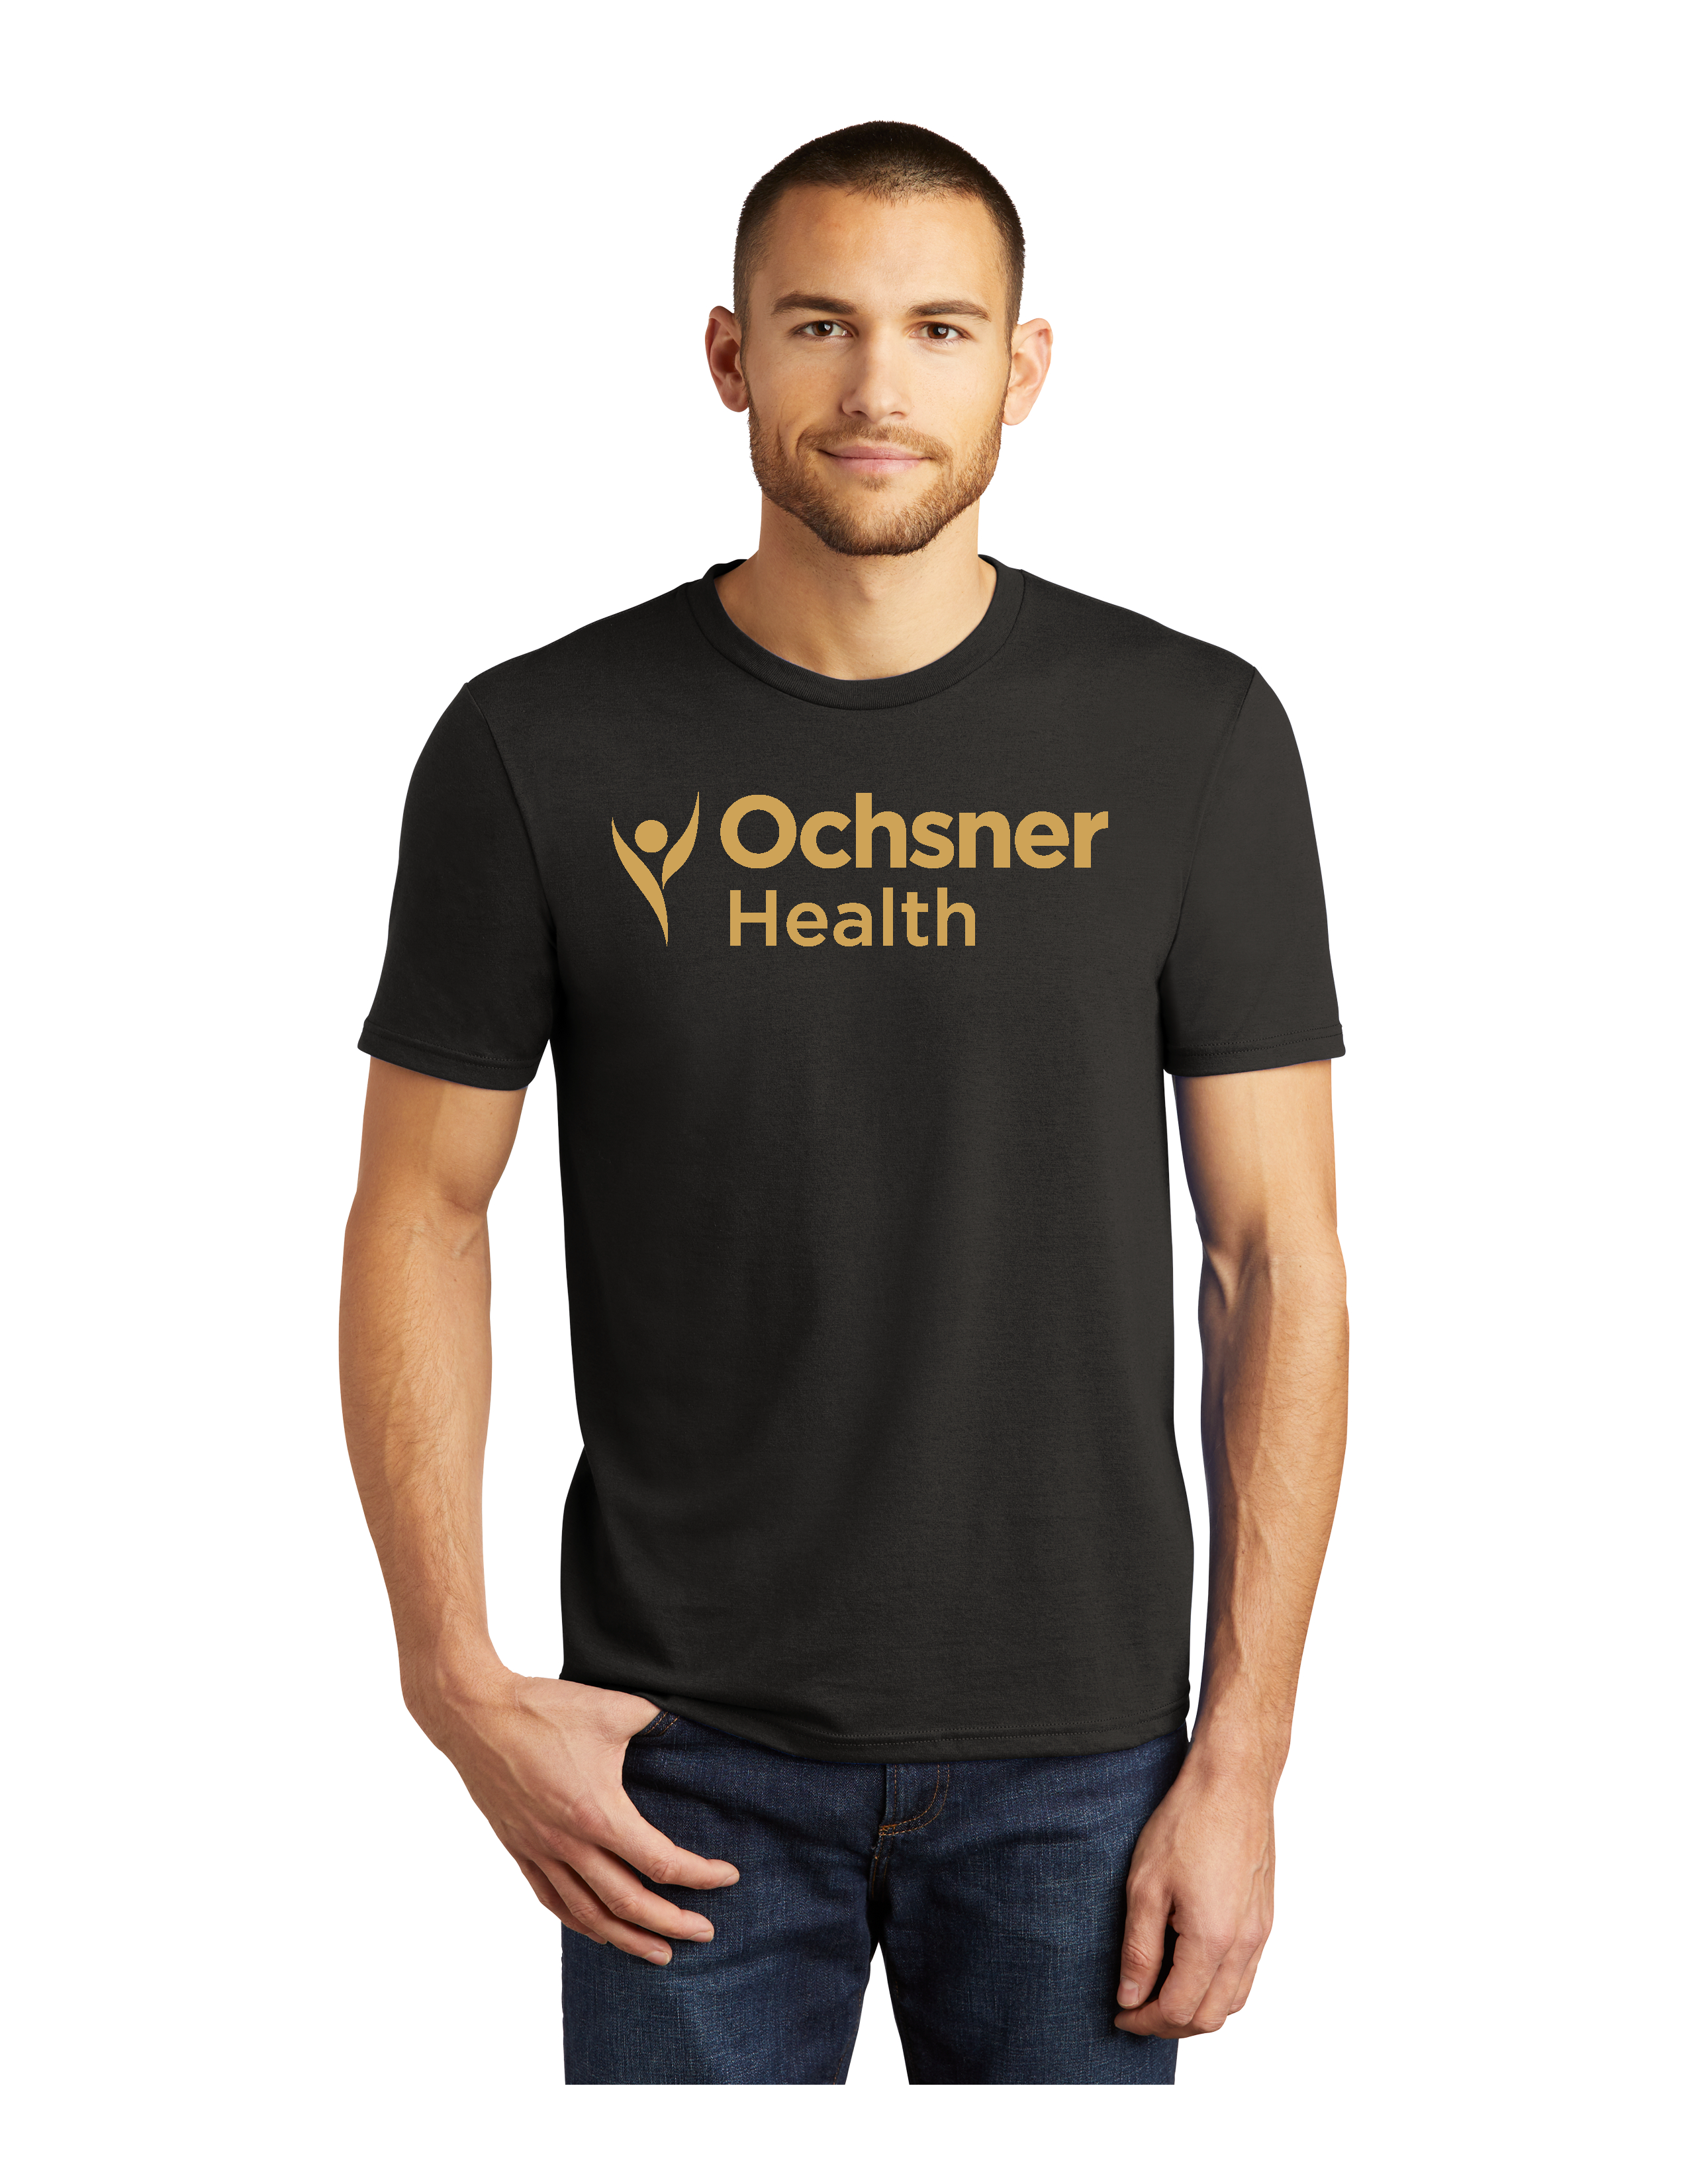 Ochsner Saints Unisex Short Sleeve T-Shirt, Black, large image number 1